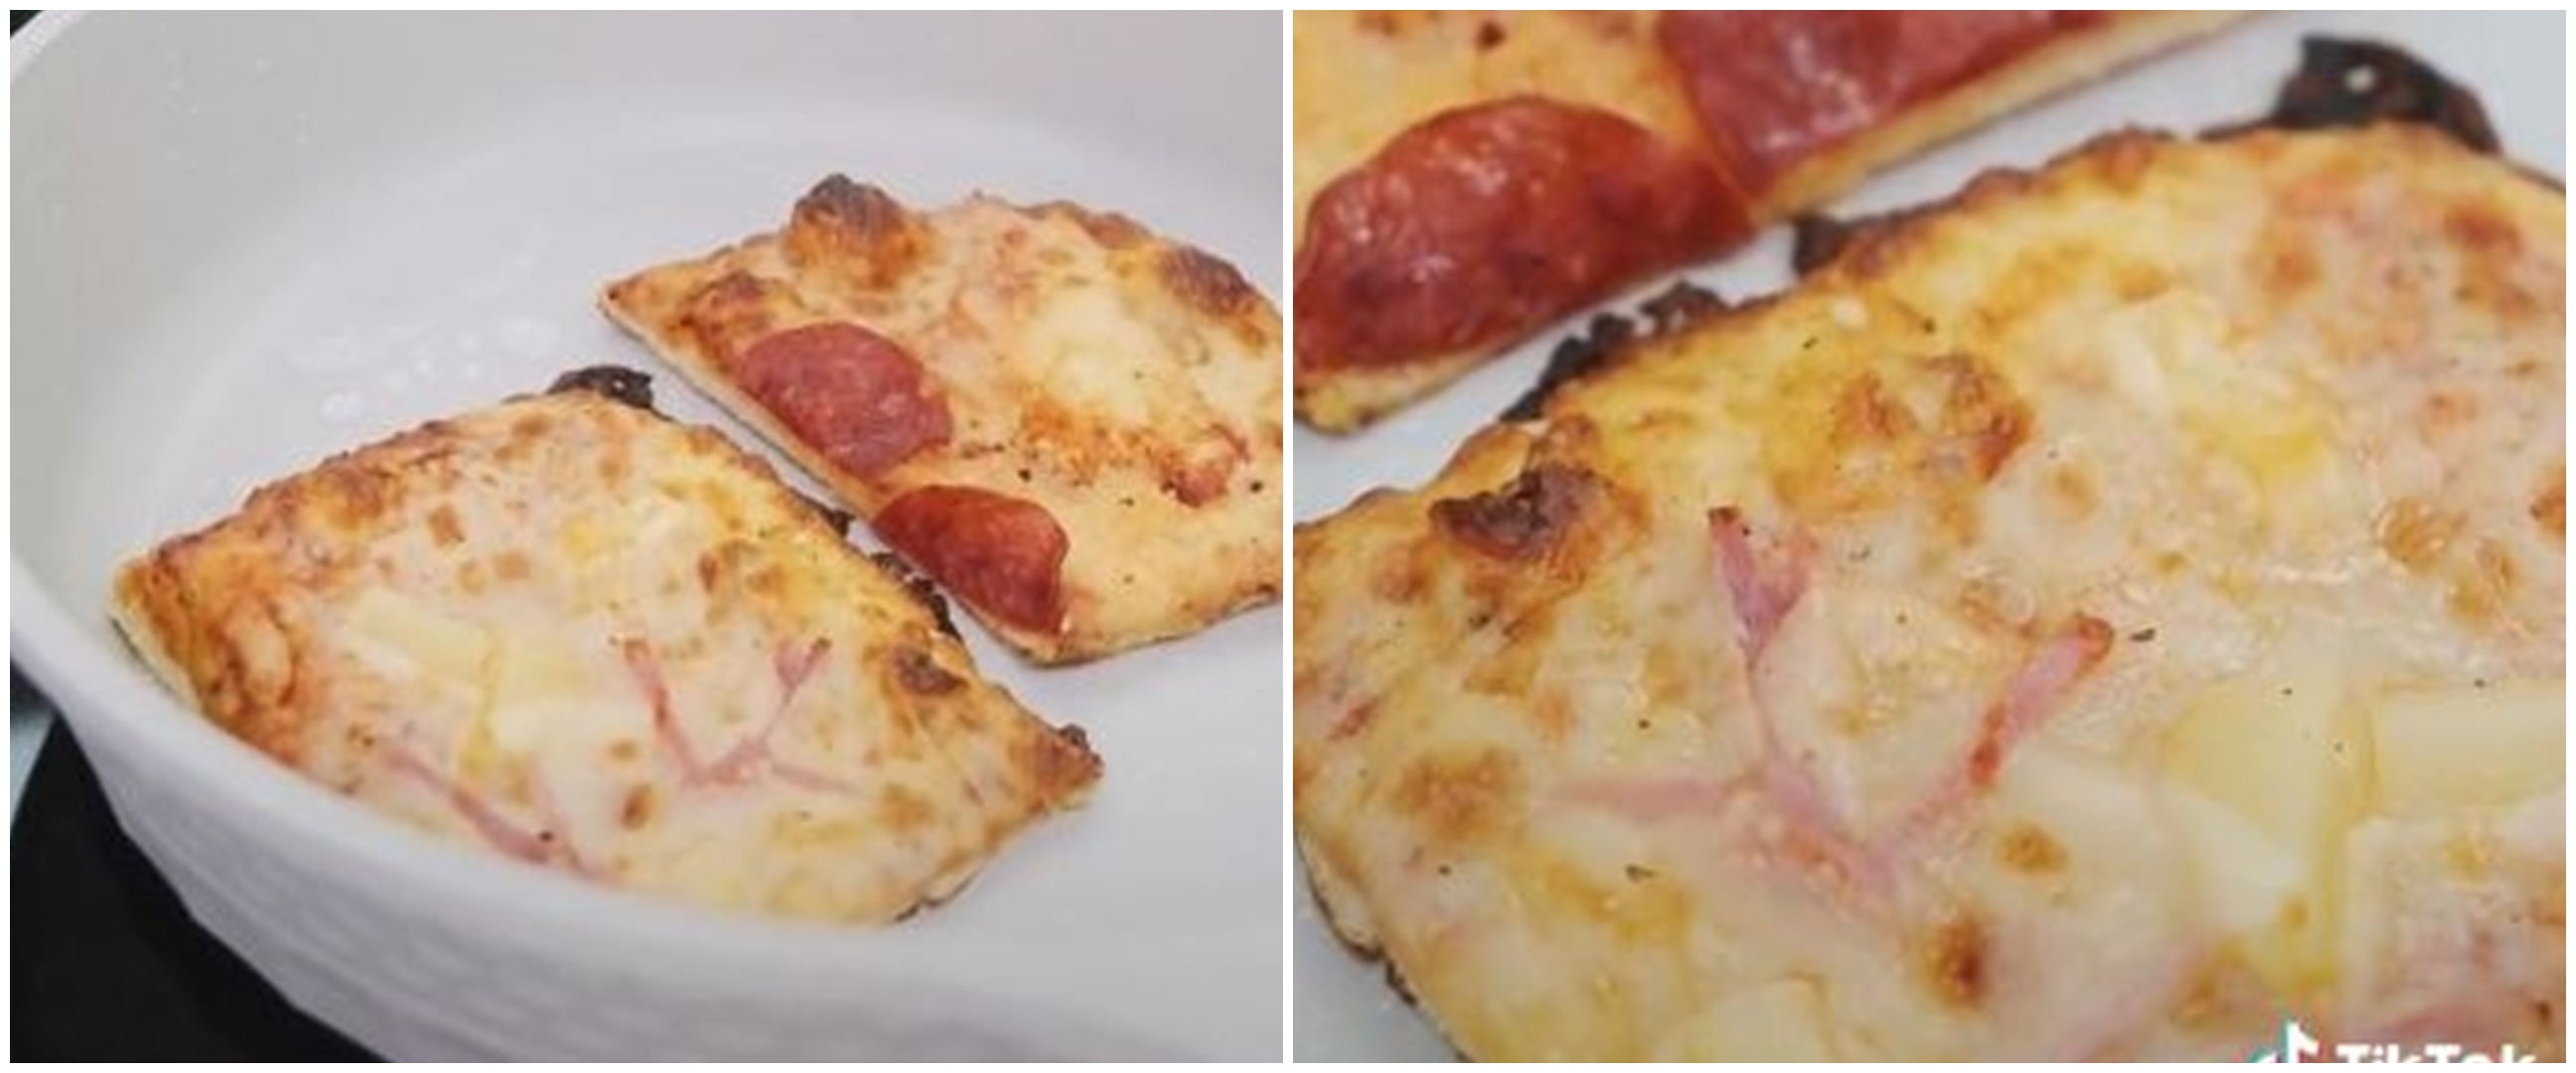 Tanpa microwave, ini trik mudah menghangatkan pizza agar kembali empuk